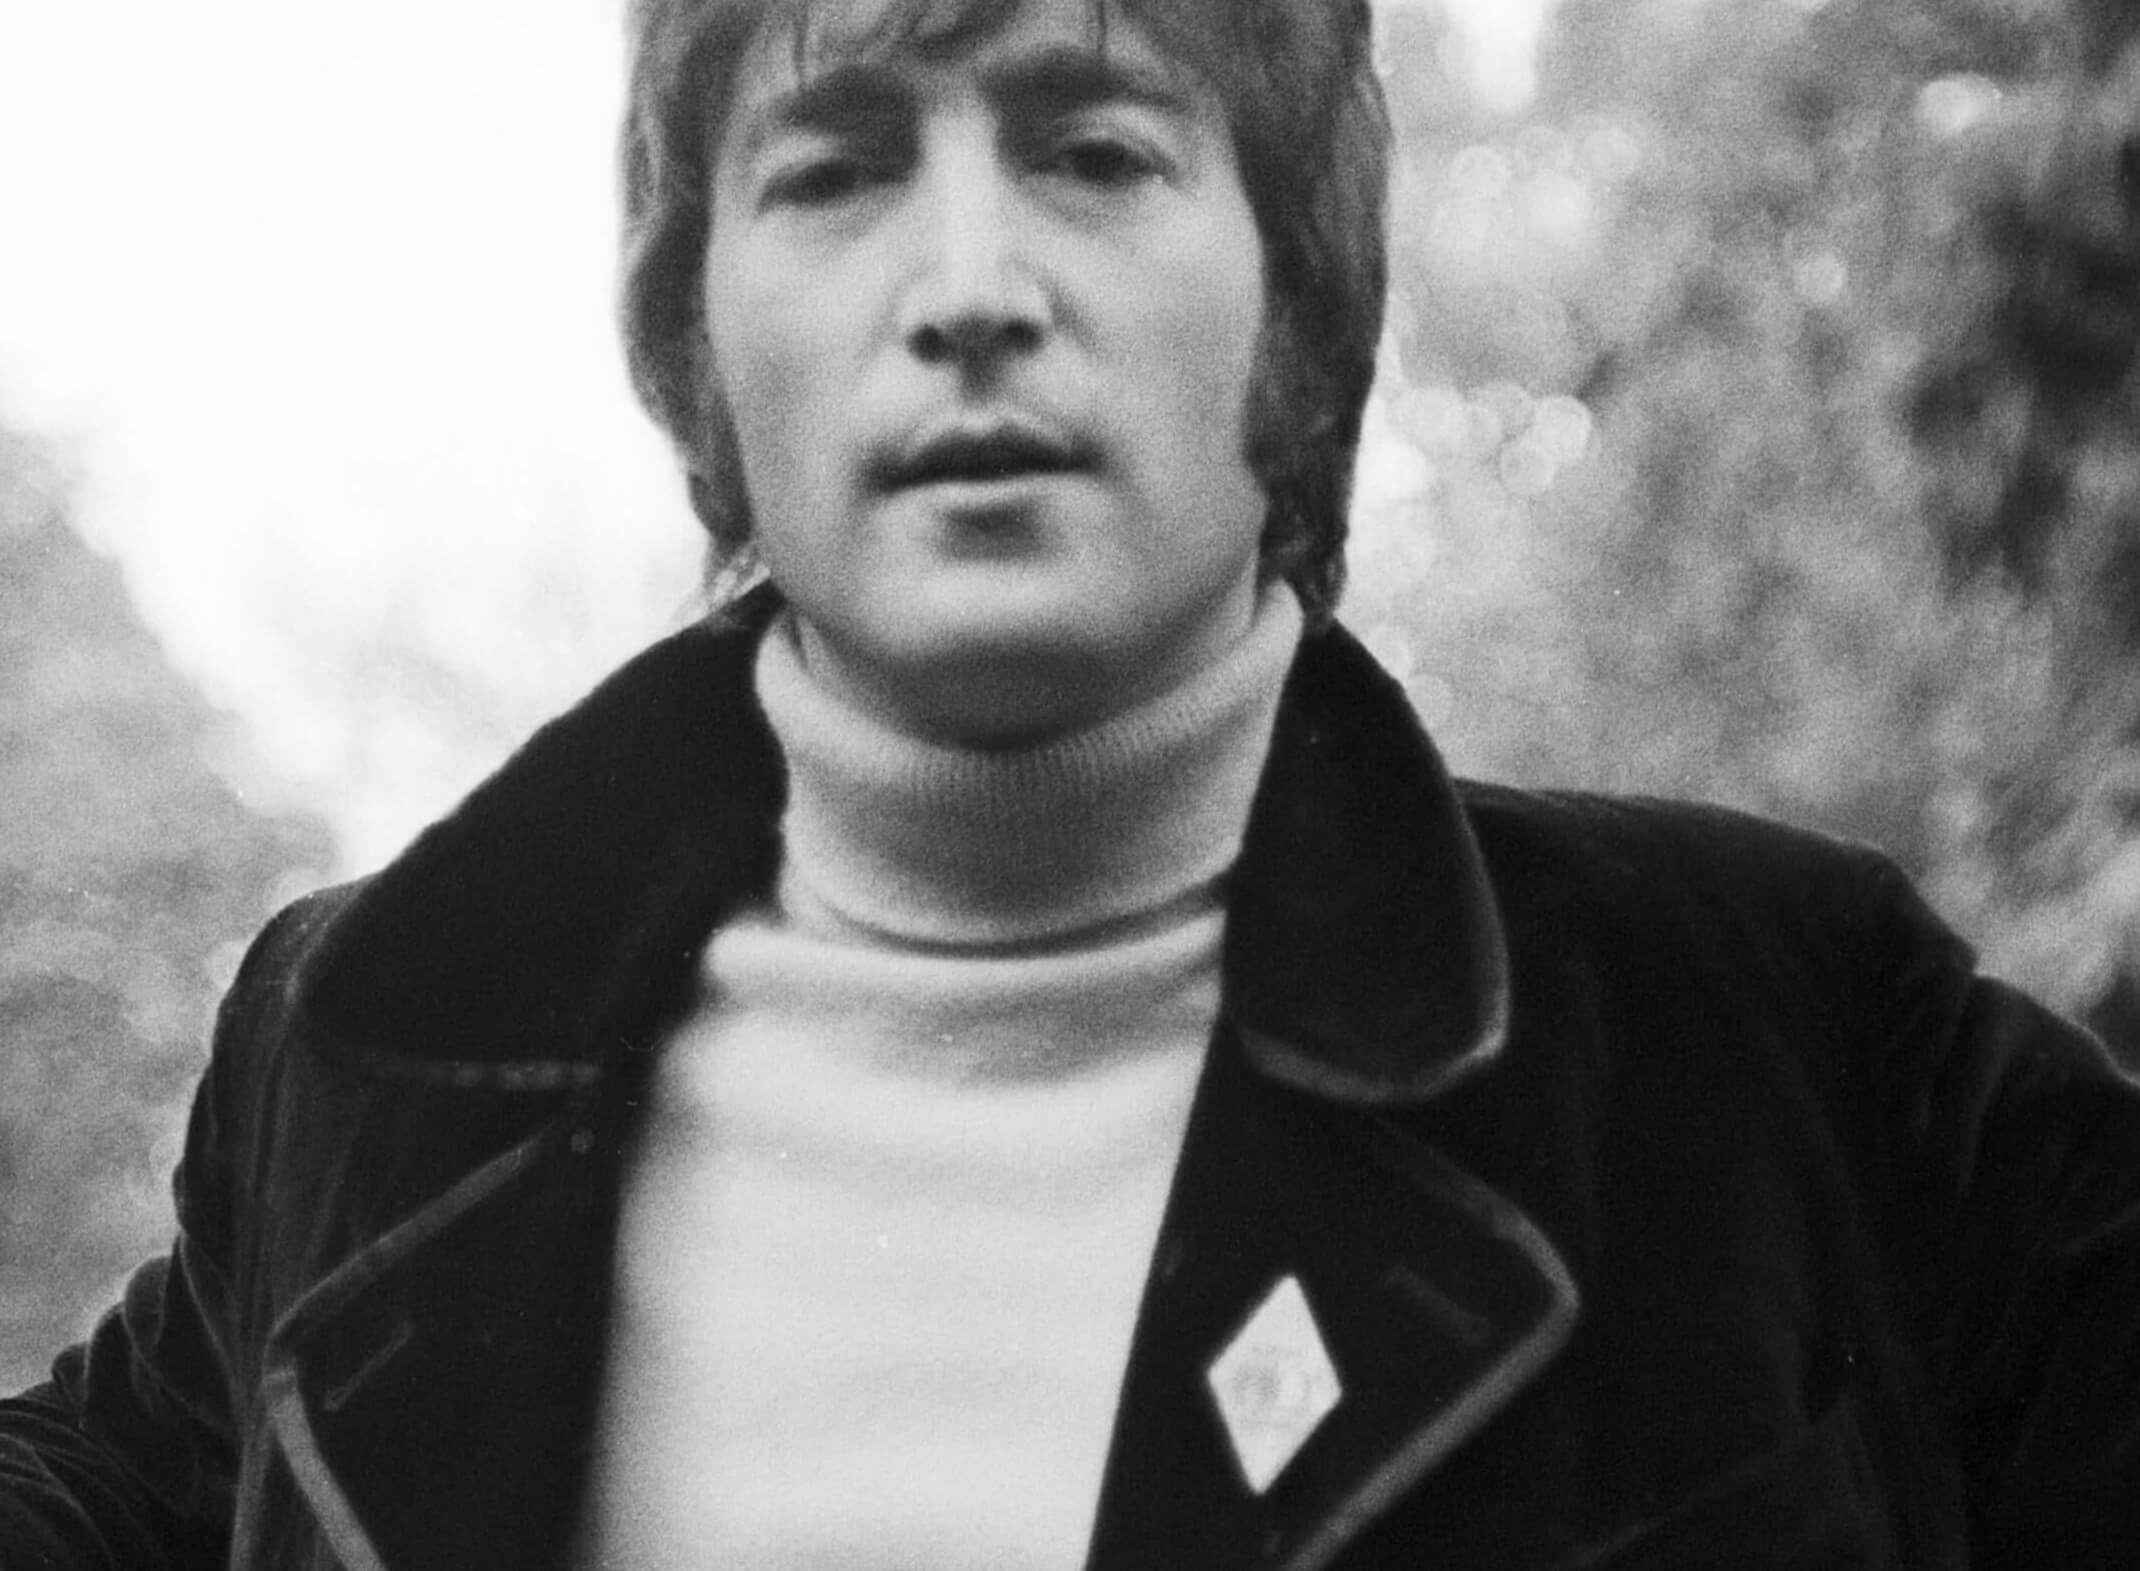 John Lennon in a sweater